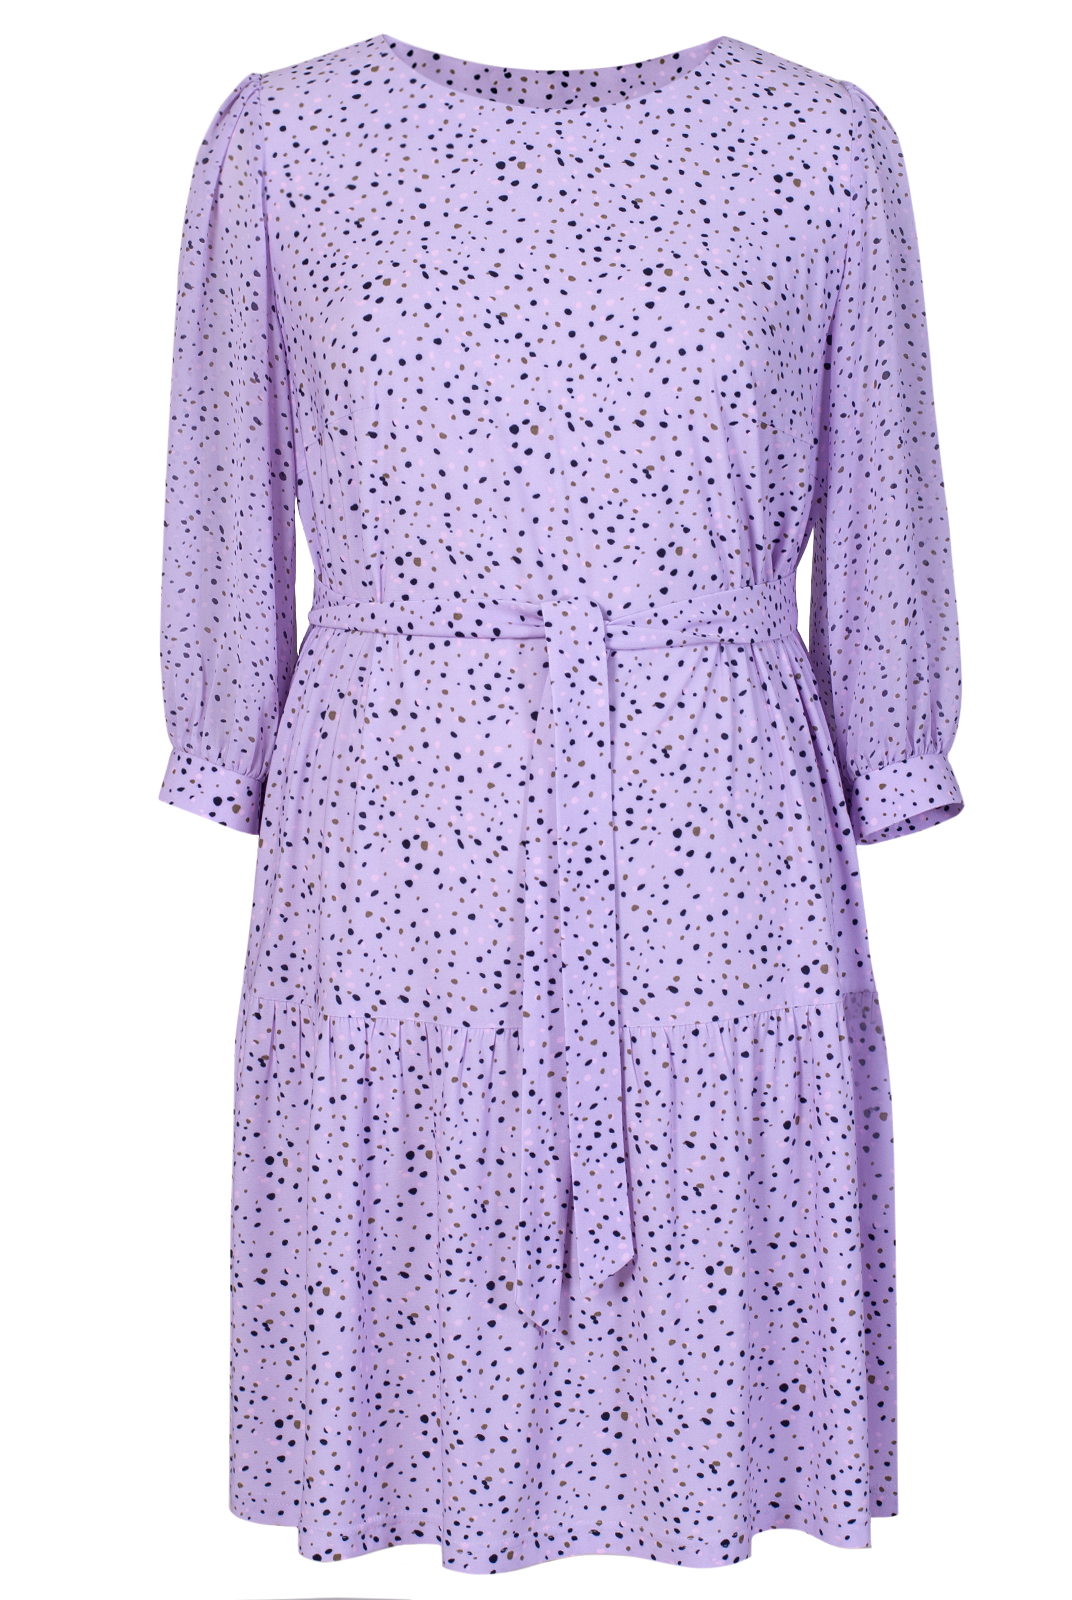 Платье женское Mila Bezgerts 3934зп фиолетовое 46 RU